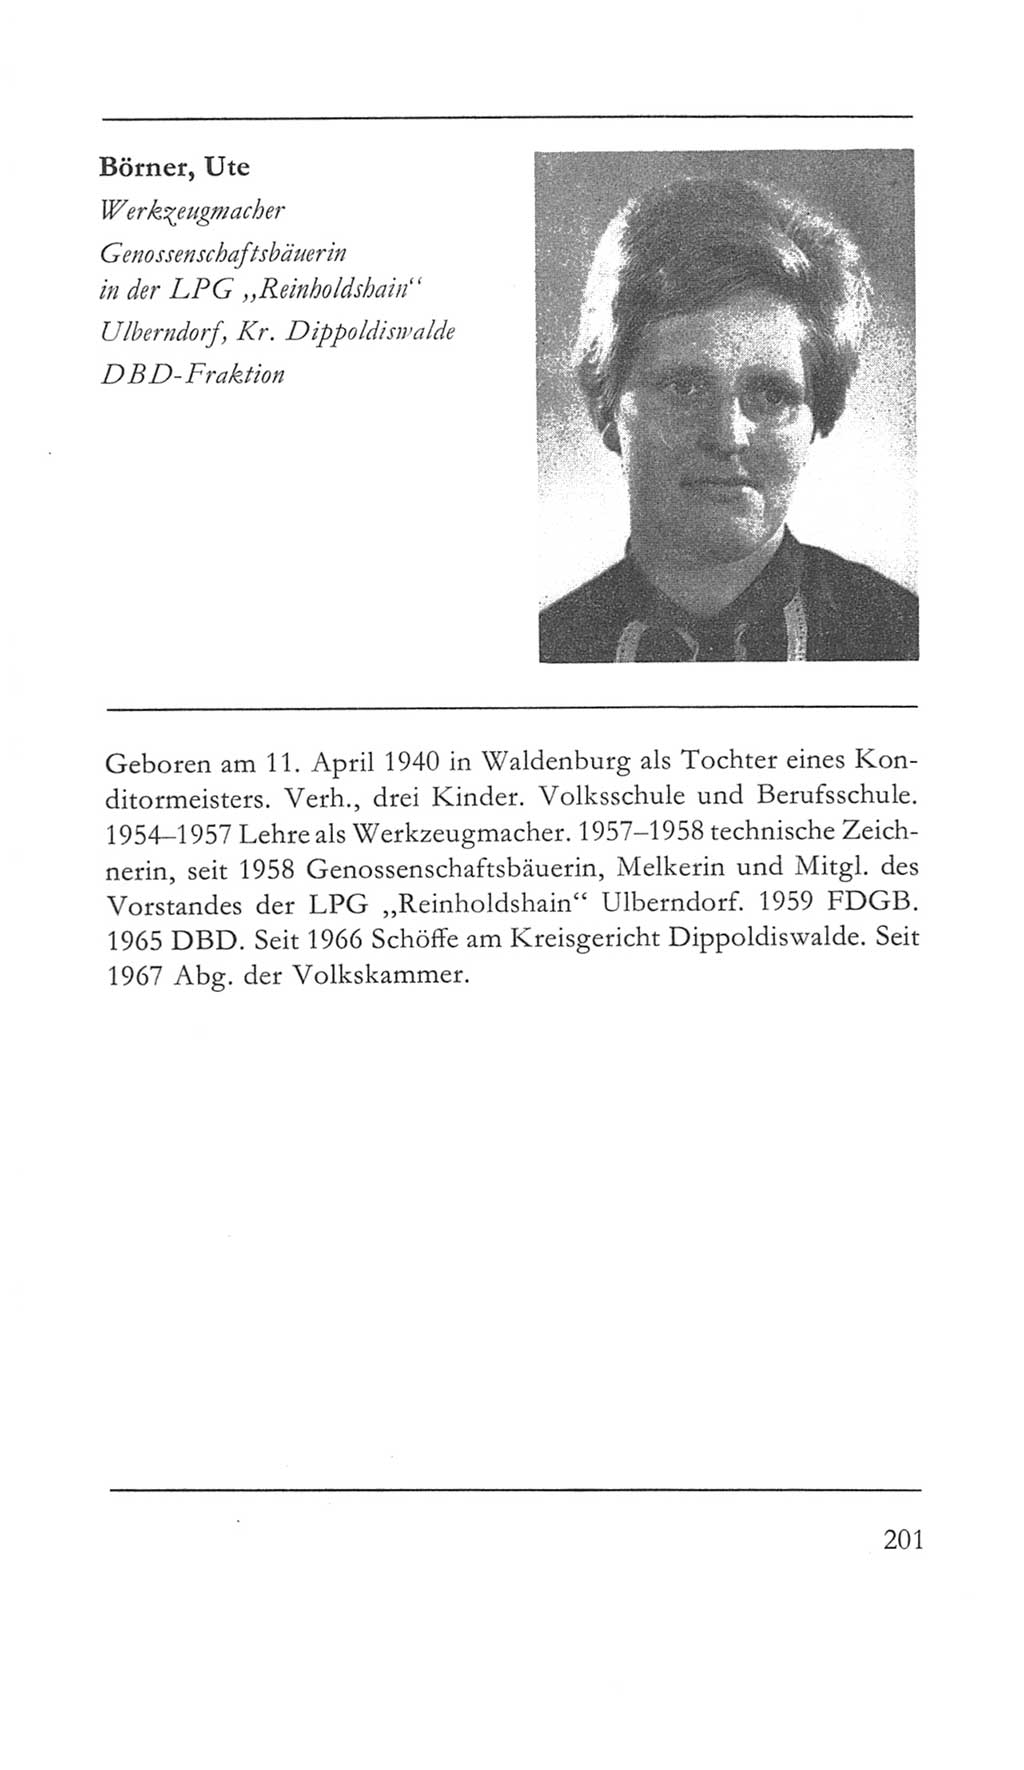 Volkskammer (VK) der Deutschen Demokratischen Republik (DDR) 5. Wahlperiode 1967-1971, Seite 201 (VK. DDR 5. WP. 1967-1971, S. 201)